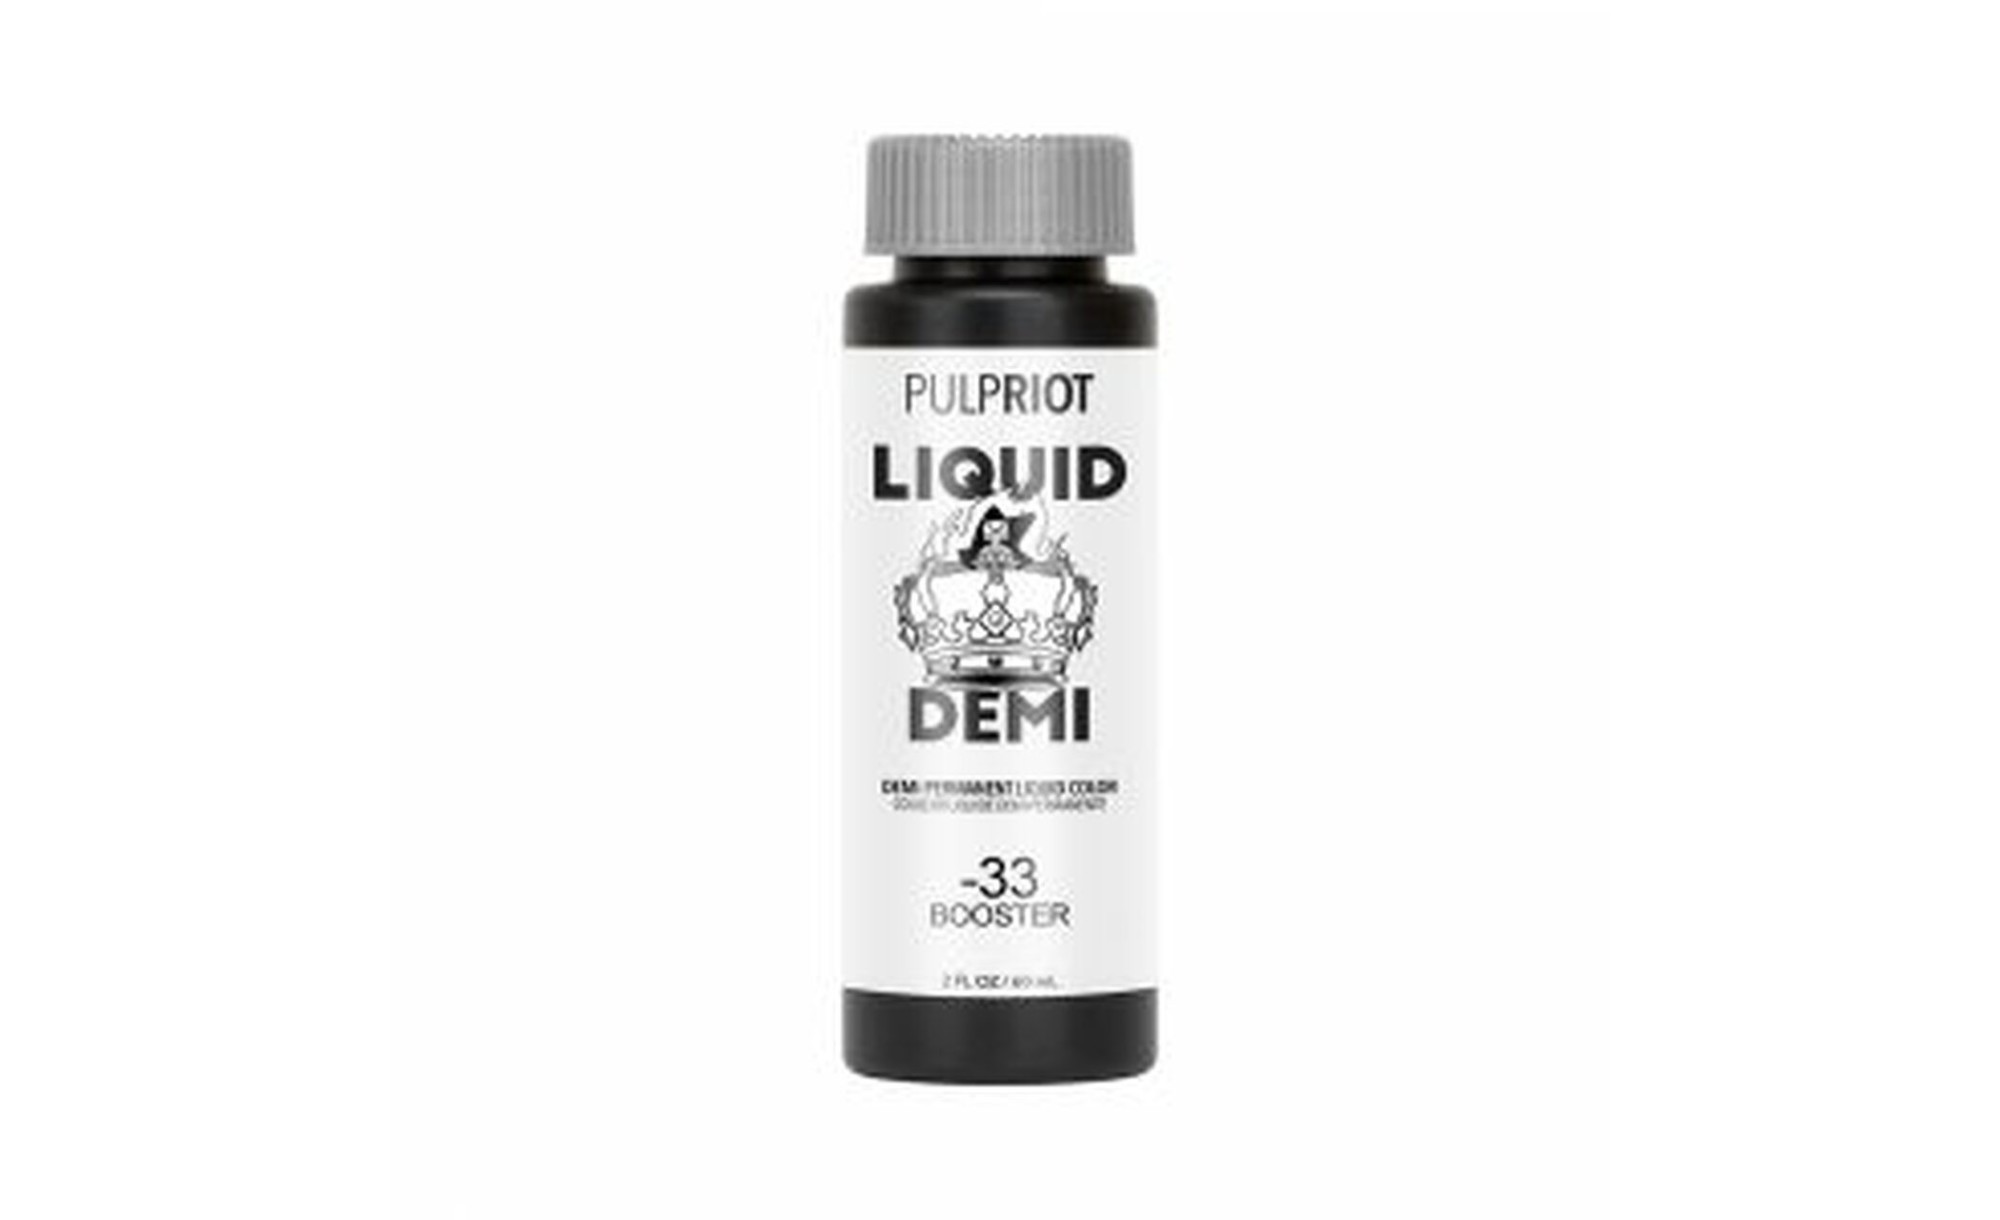 Pulp Riot Liquid Demi Gold Booster -33